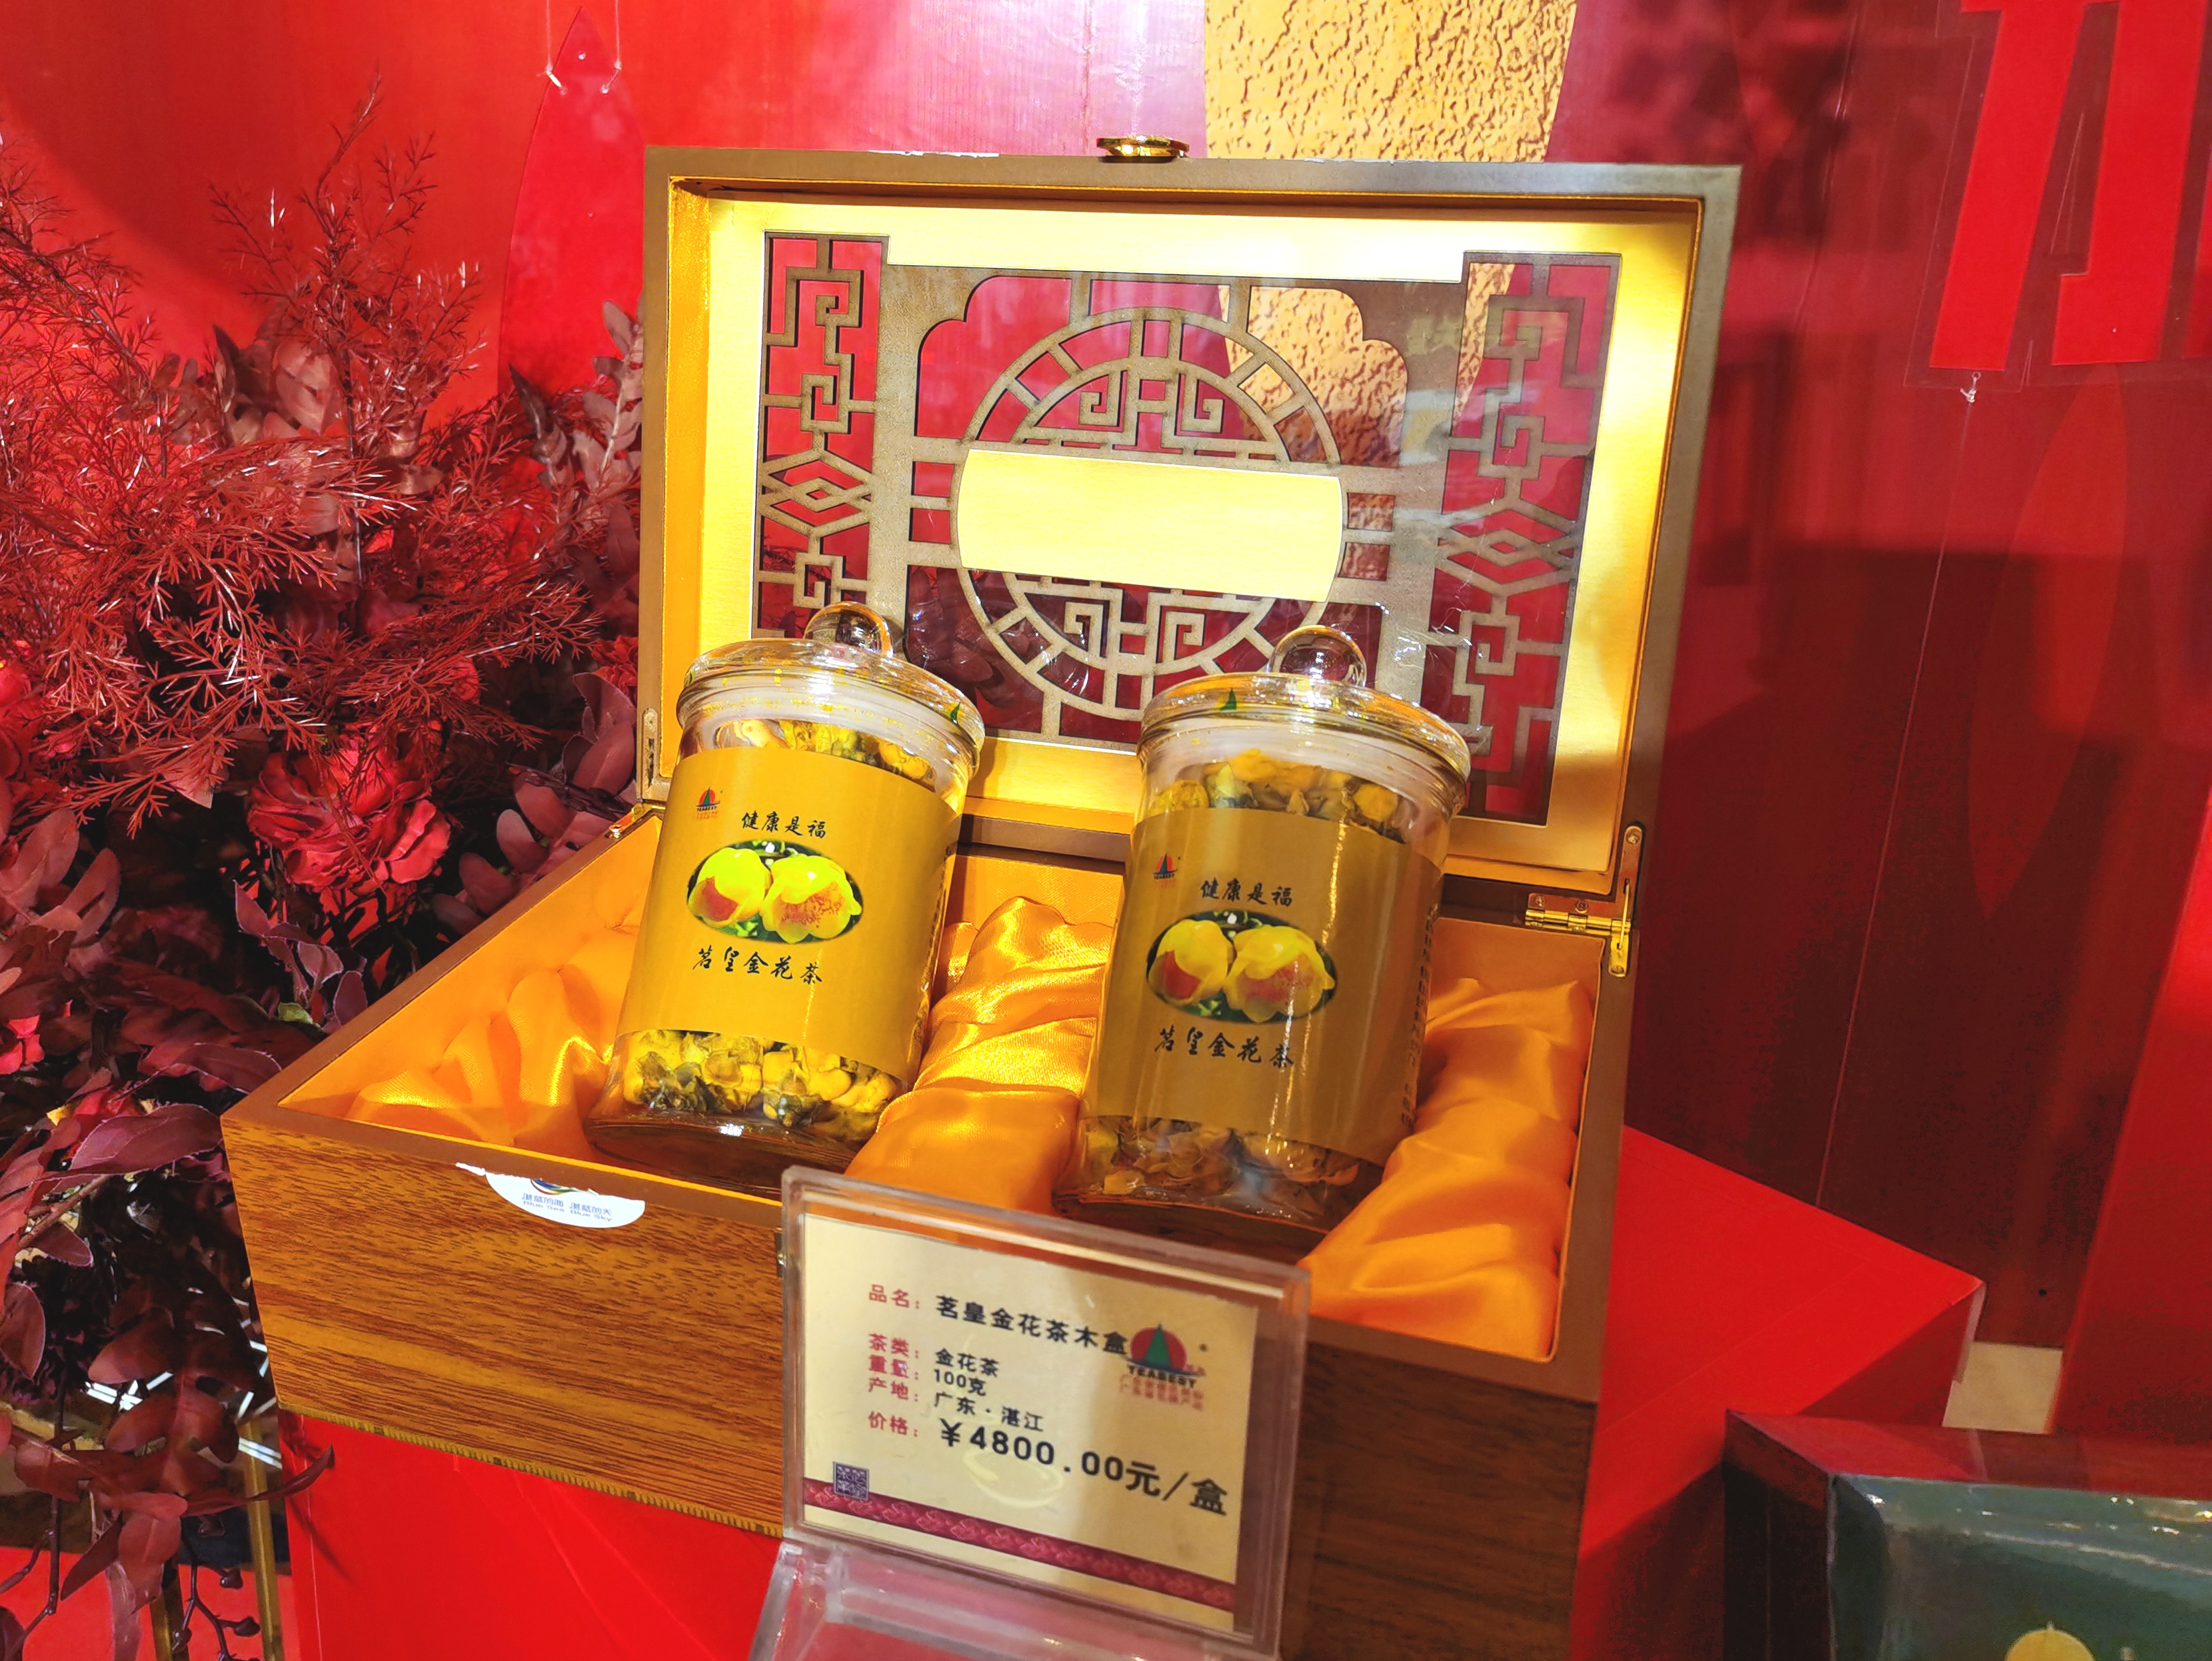 茗皇有机茶发布全新品牌战略 0化肥0农药0添加引领健康茶饮趋势